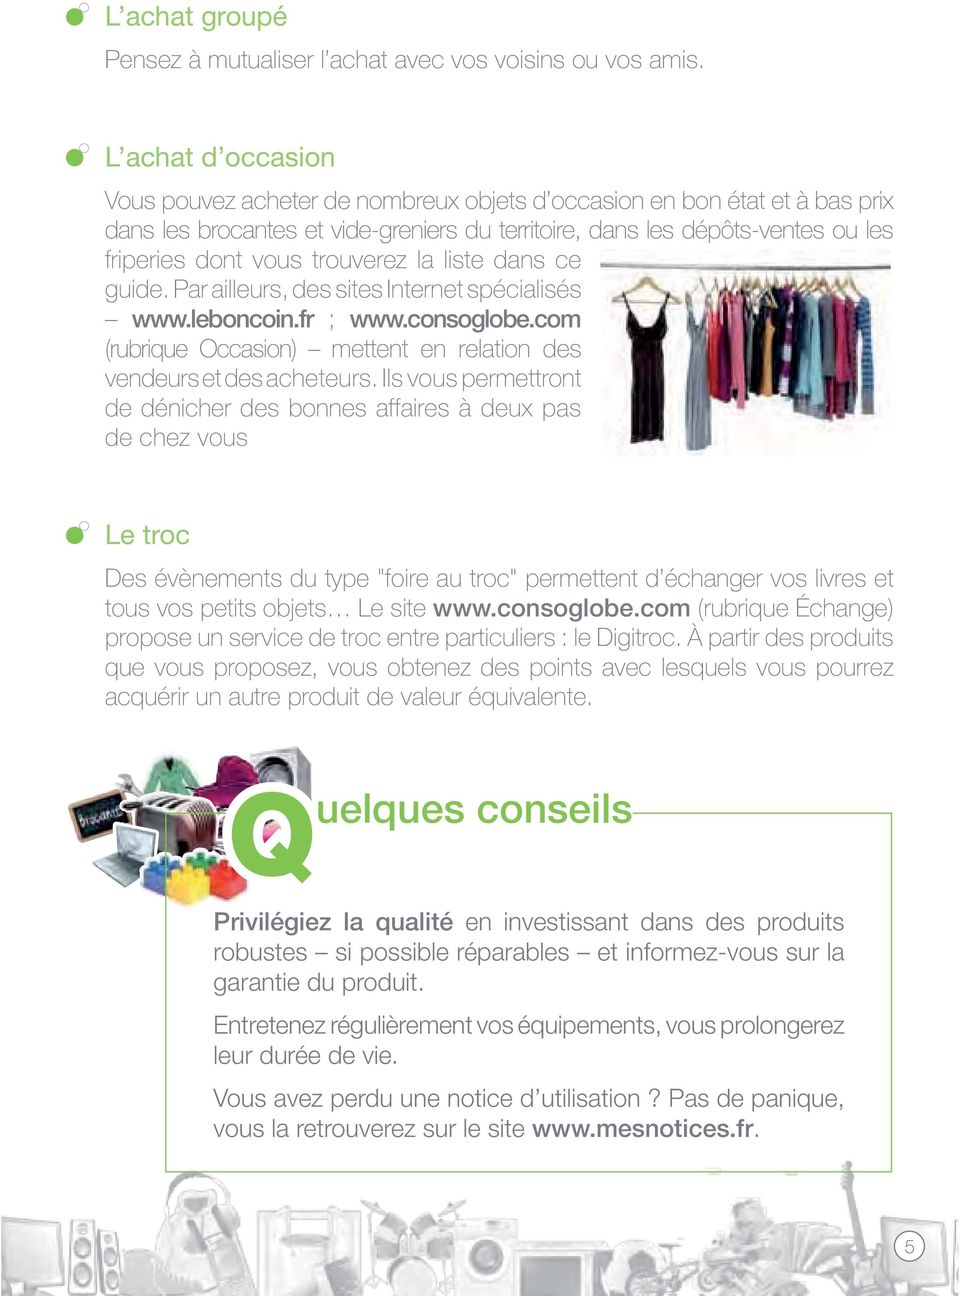 trouverez la liste dans ce guide. Par ailleurs, des sites Internet spécialisés www.leboncoin.fr ; www.consoglobe.com (rubrique Occasion) mettent en relation des vendeurs et des acheteurs.